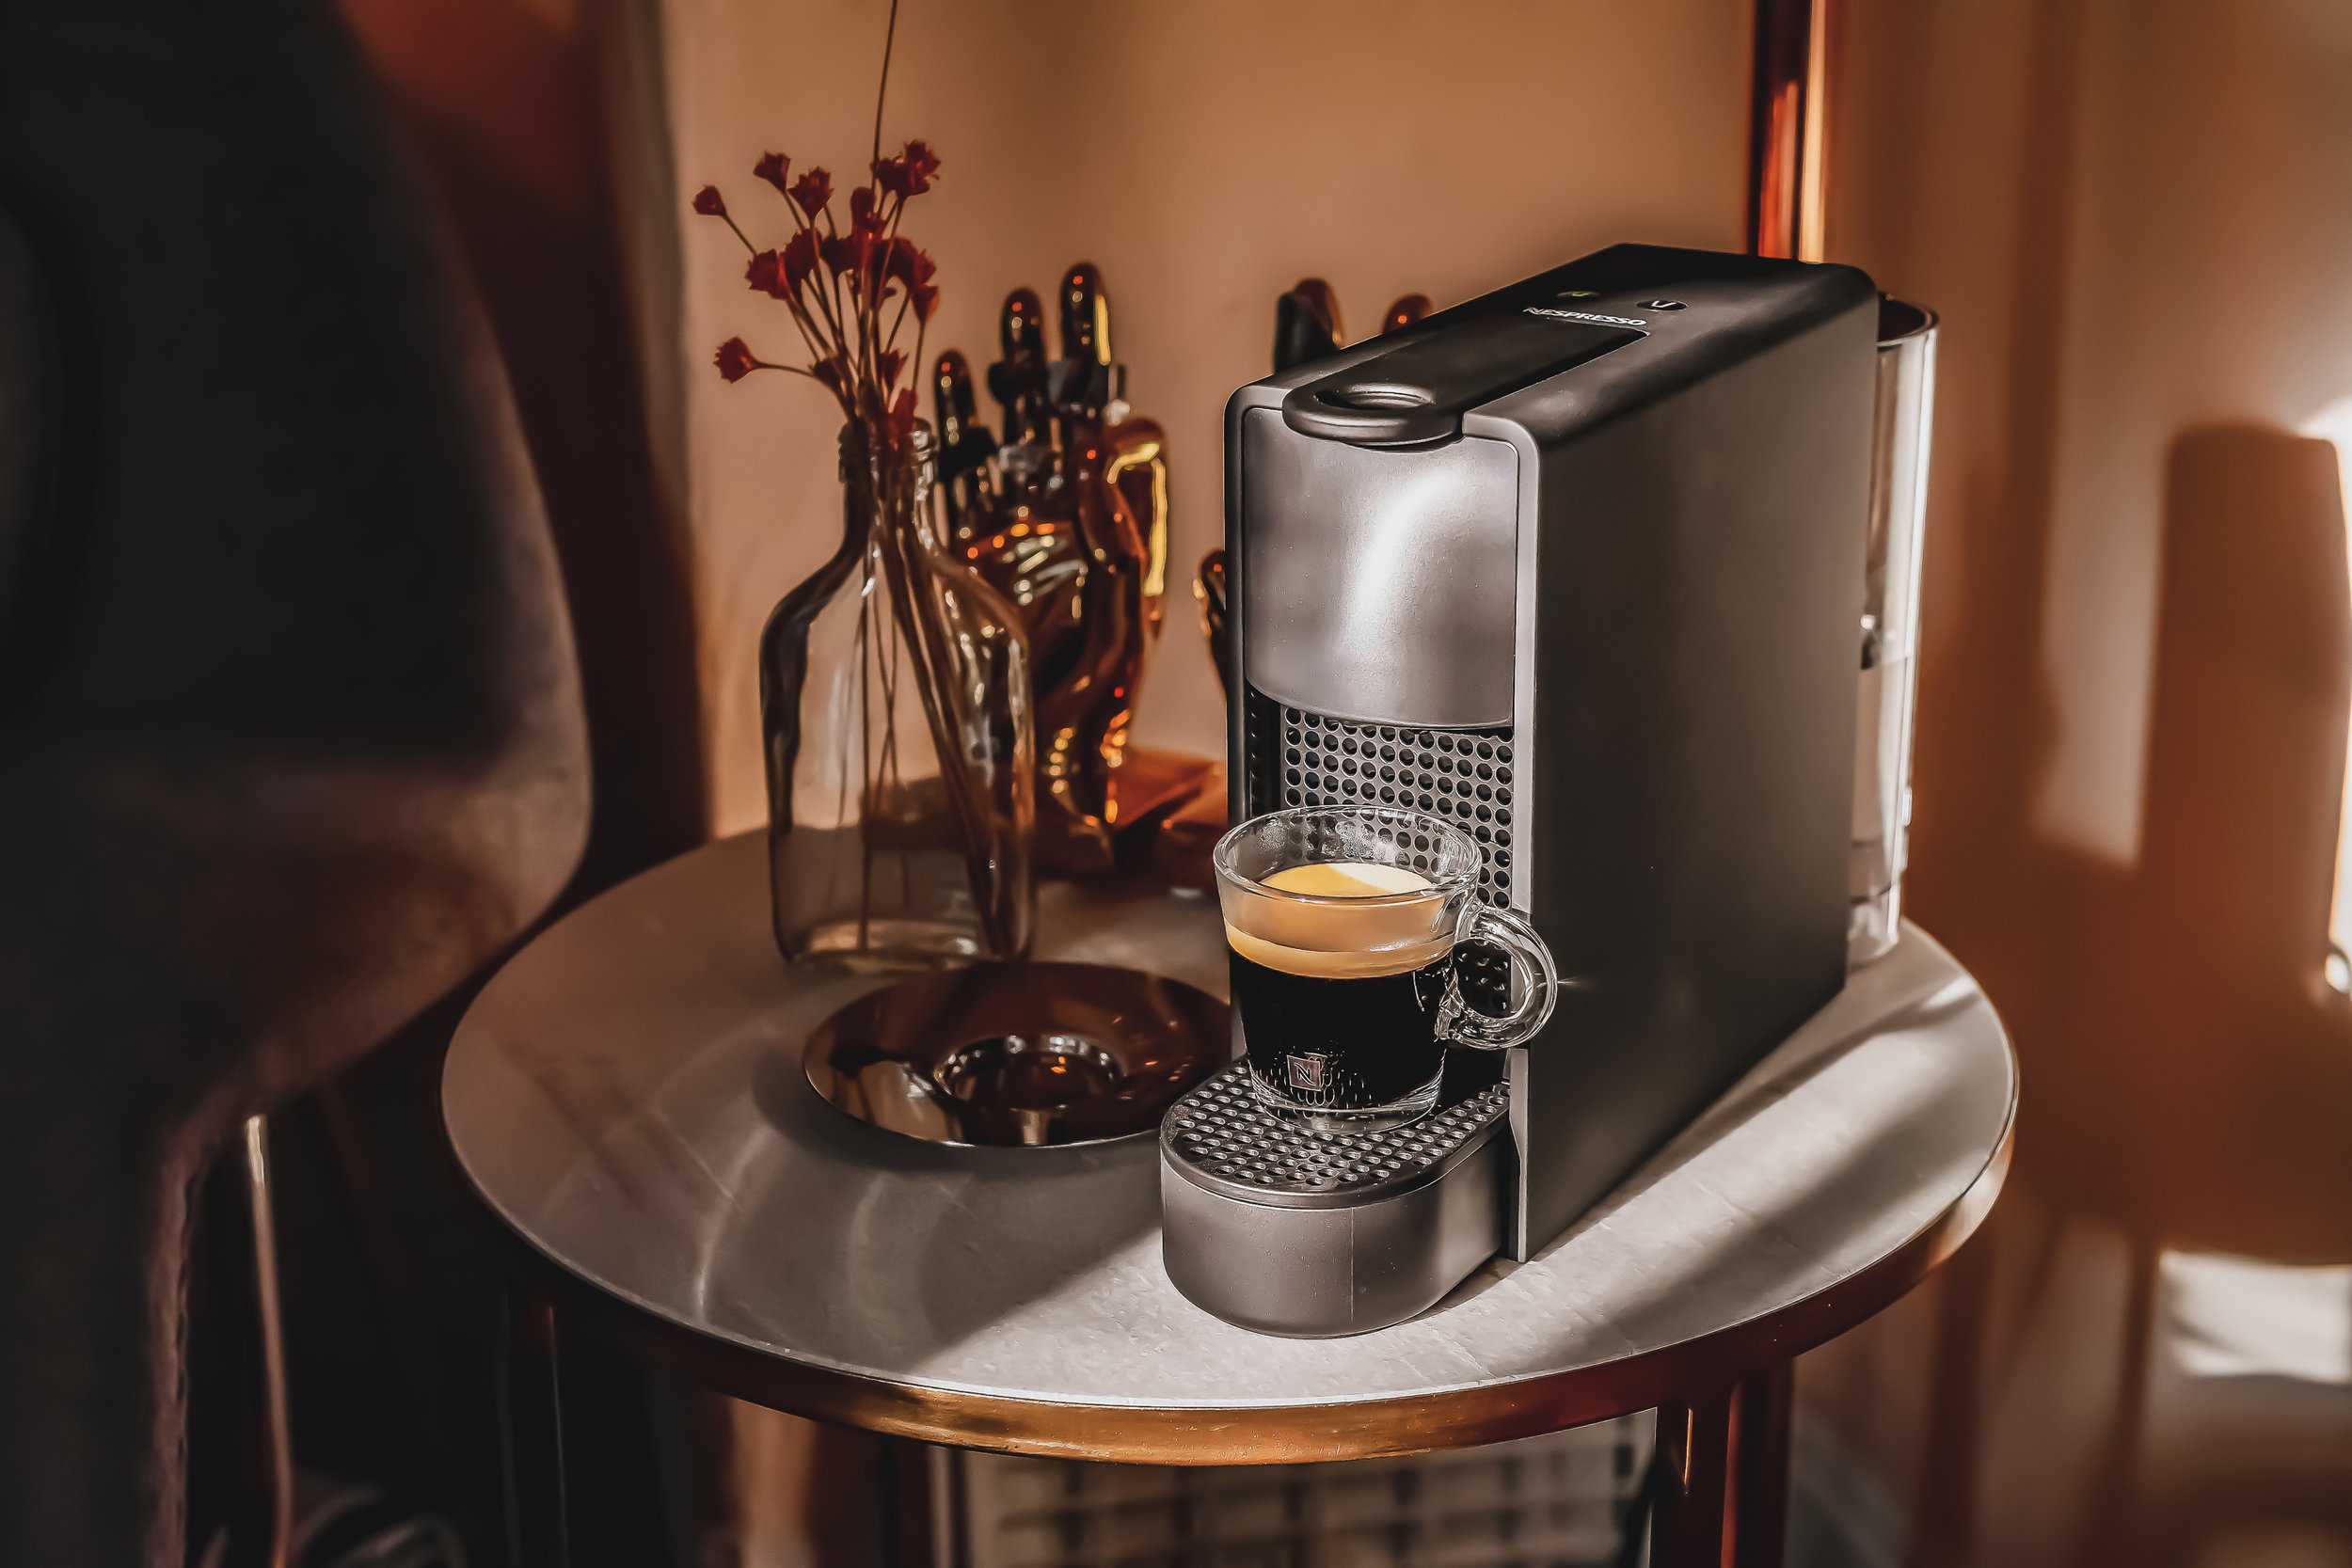 Thiết kế tinh xảo của máy pha chế cà phê